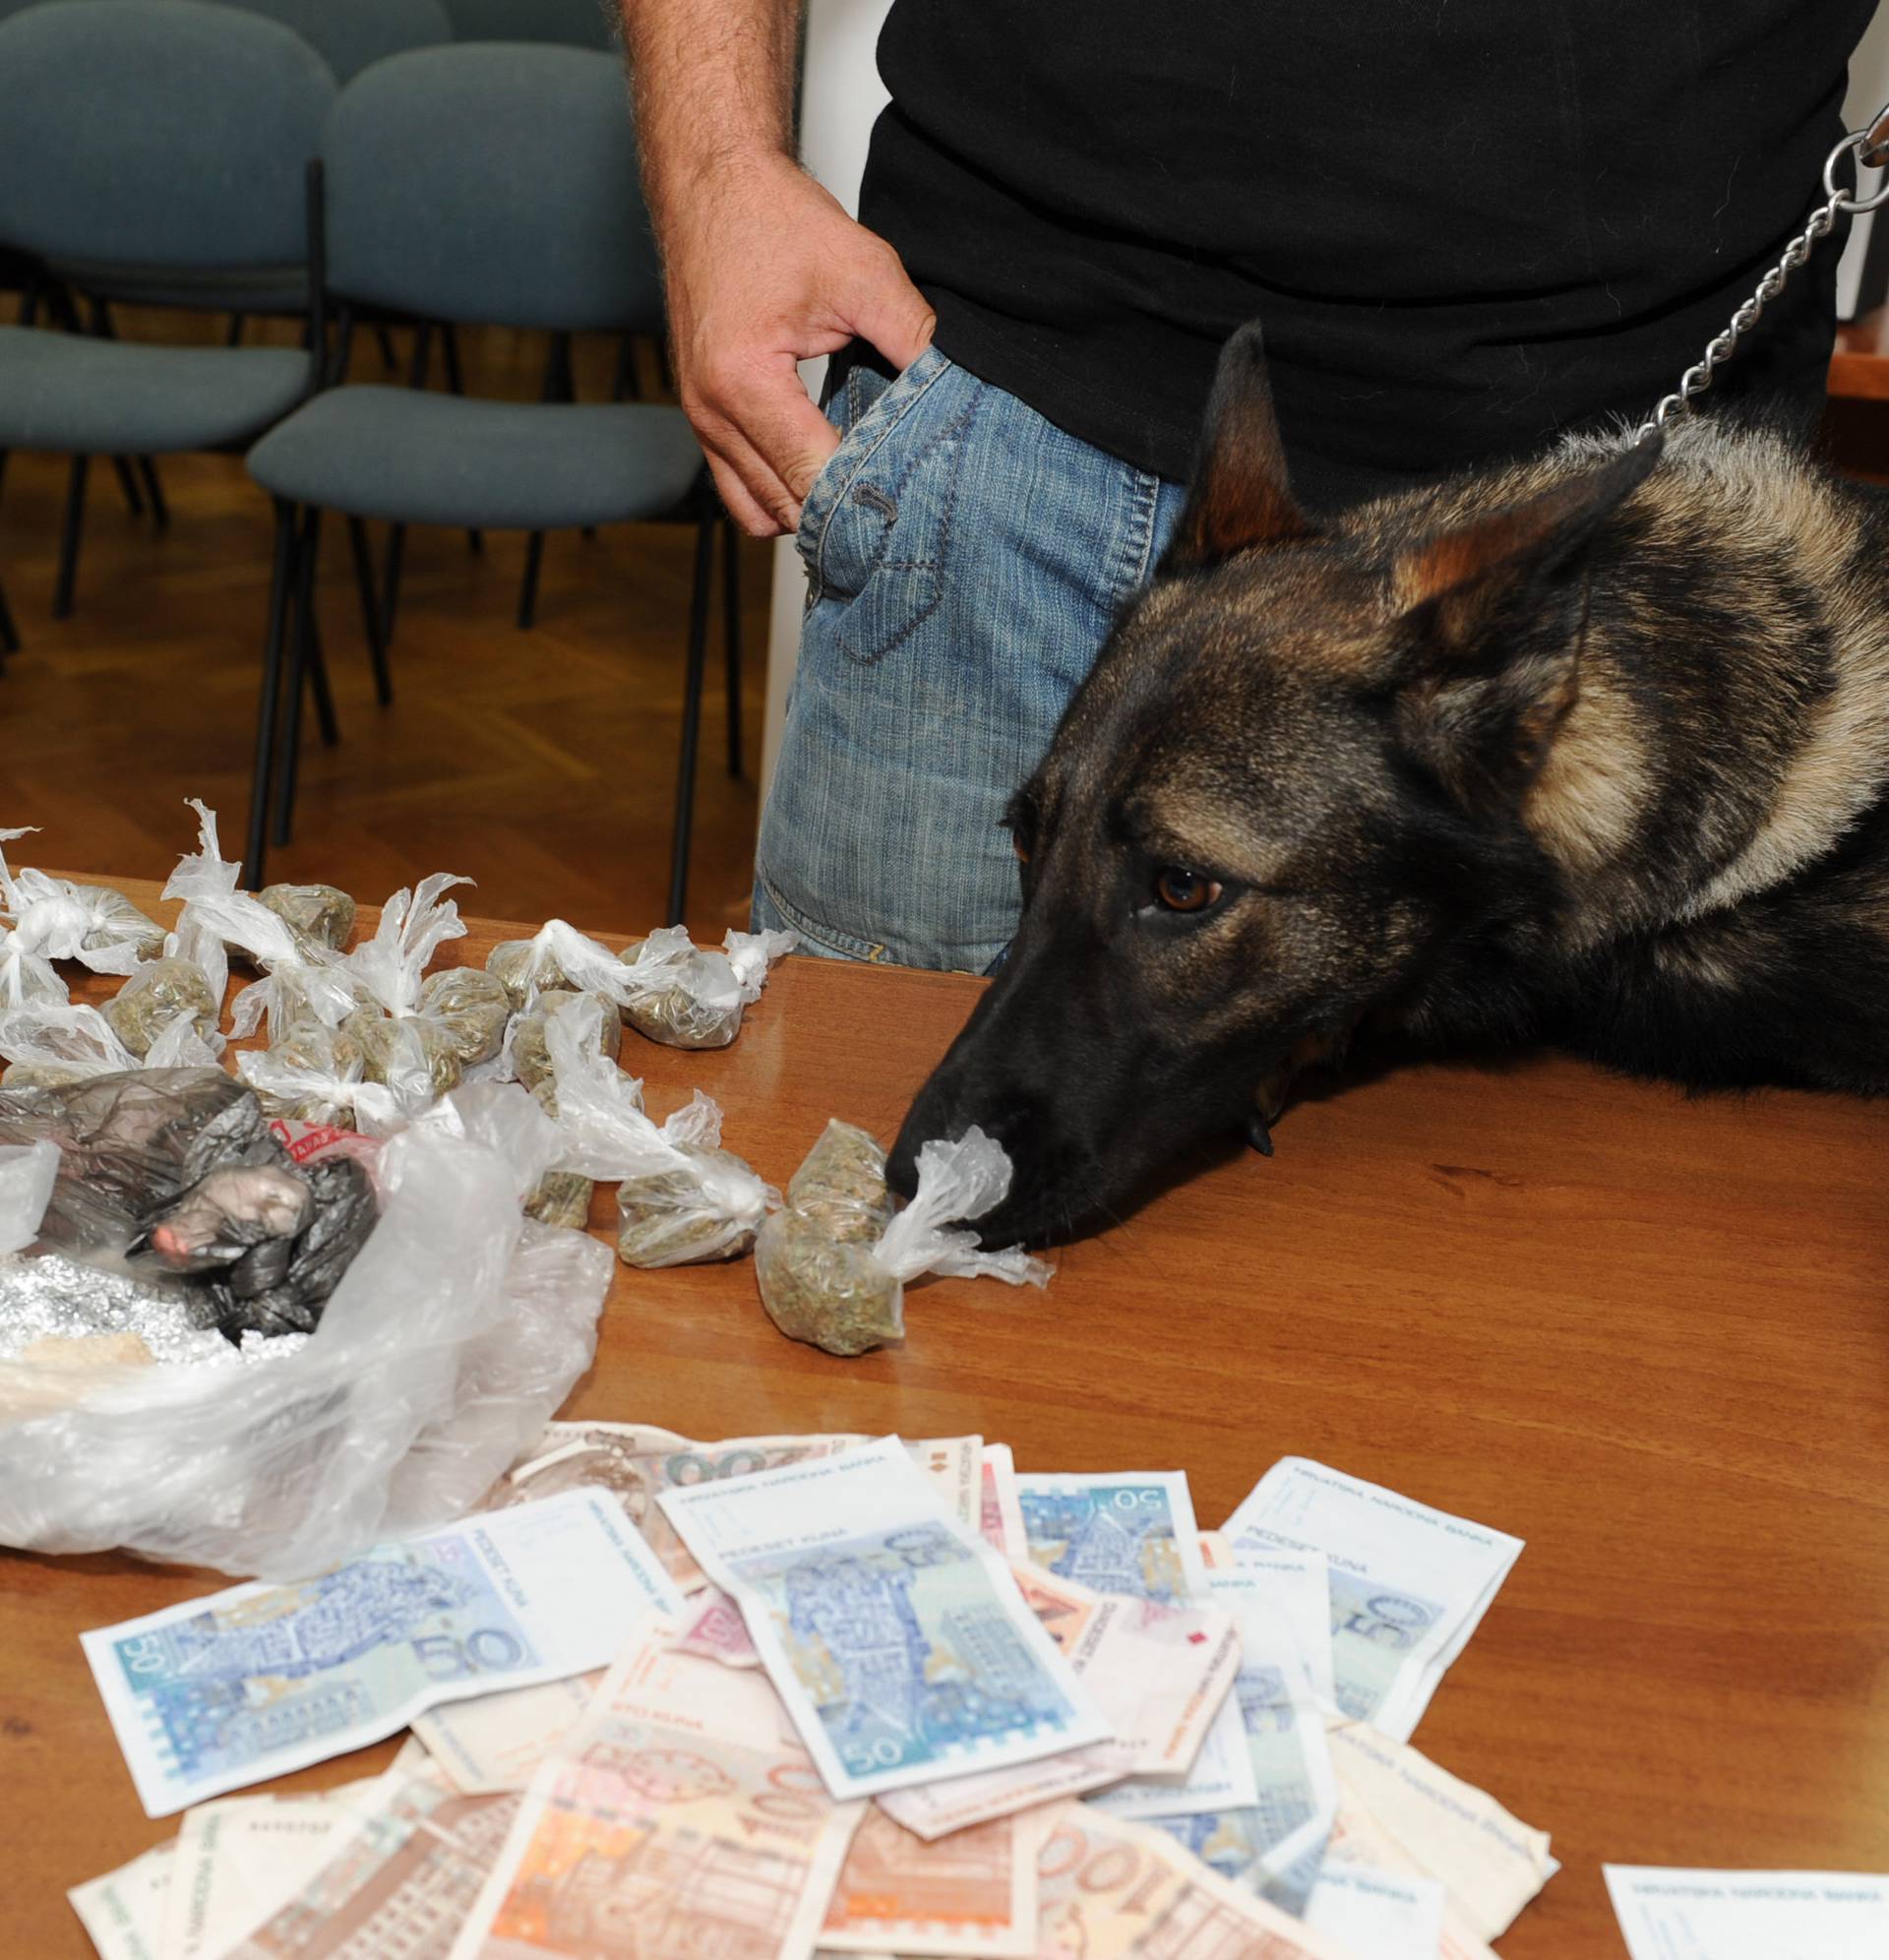 Uz pomoć policijskog psa našli 50.000 kuna i gomilu narkotika